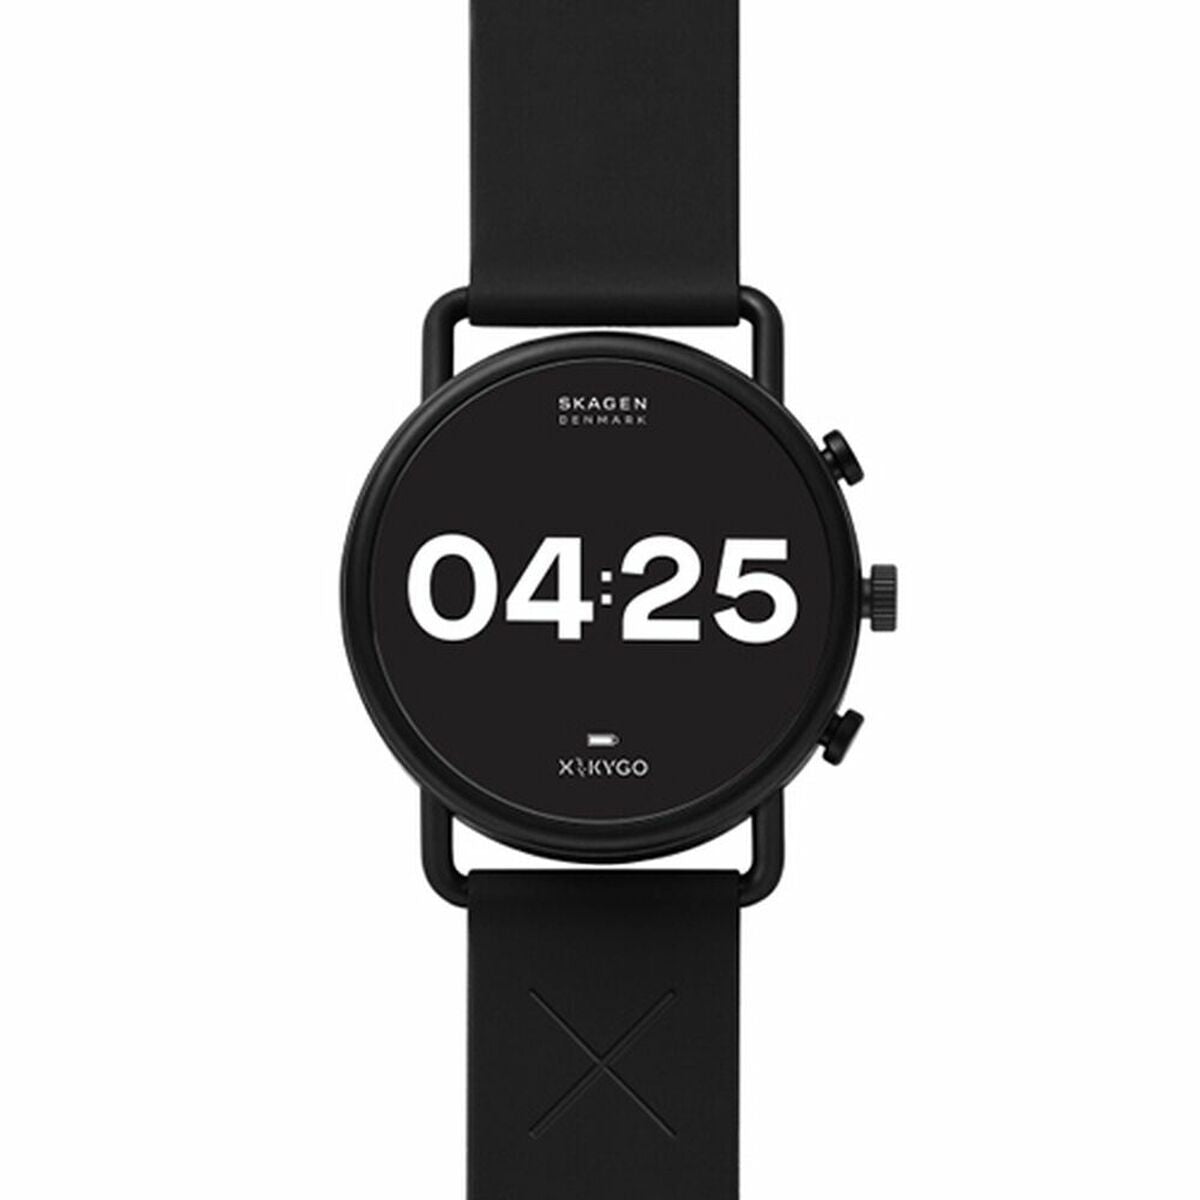 Kaufe Smartwatch Skagen X by KYGO - Gen. 5 bei AWK Flagship um € 220.00